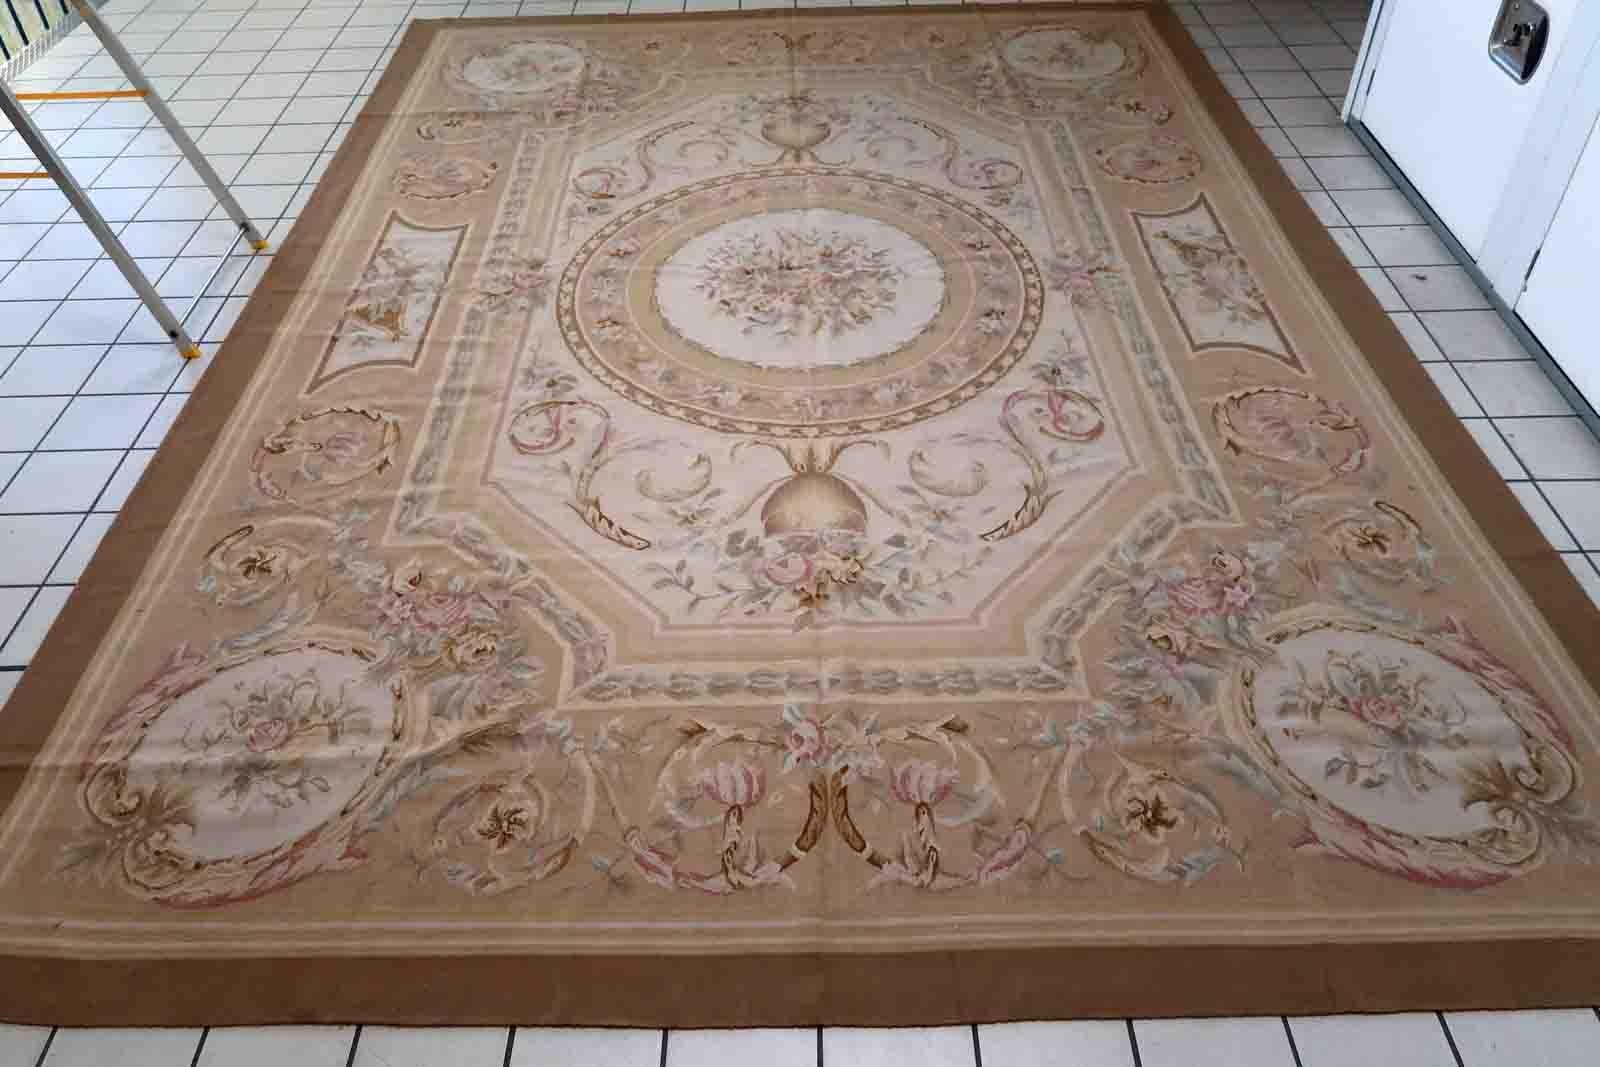 Tapis Aubusson français vintage fait à la main en bon état d'origine. Ce tapis est unique en son genre et a été fabriqué en France à la fin du 20e siècle.

-état : original bon,

-vers : les années 1970,

-taille : 8,7' x 12' (266cm x